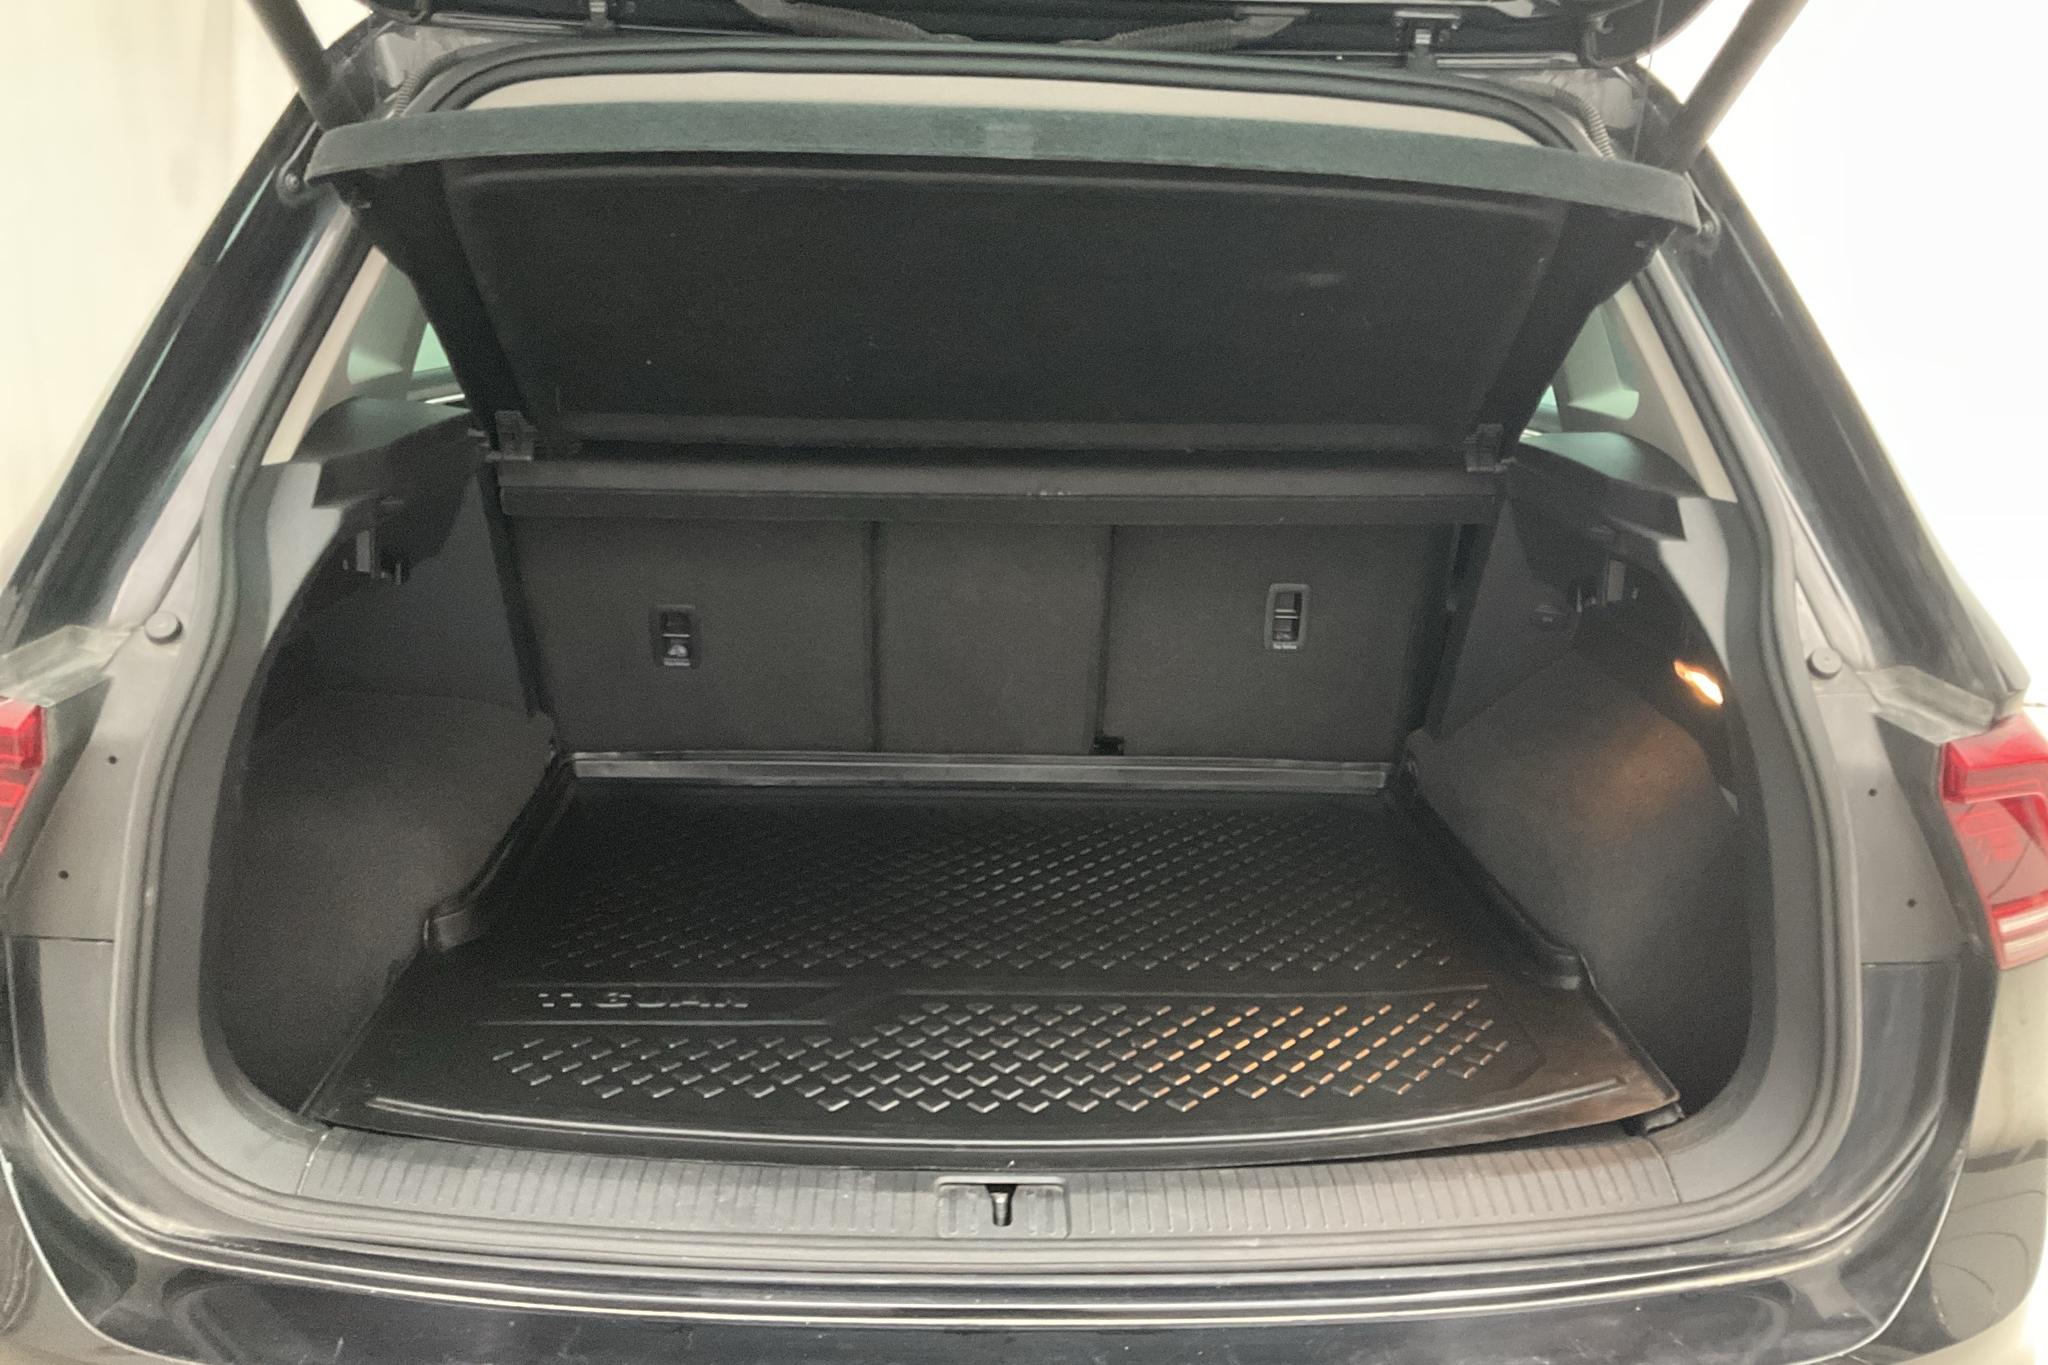 VW Tiguan 2.0 TDI 4MOTION (190hk) - 116 010 km - Automatyczna - czarny - 2017